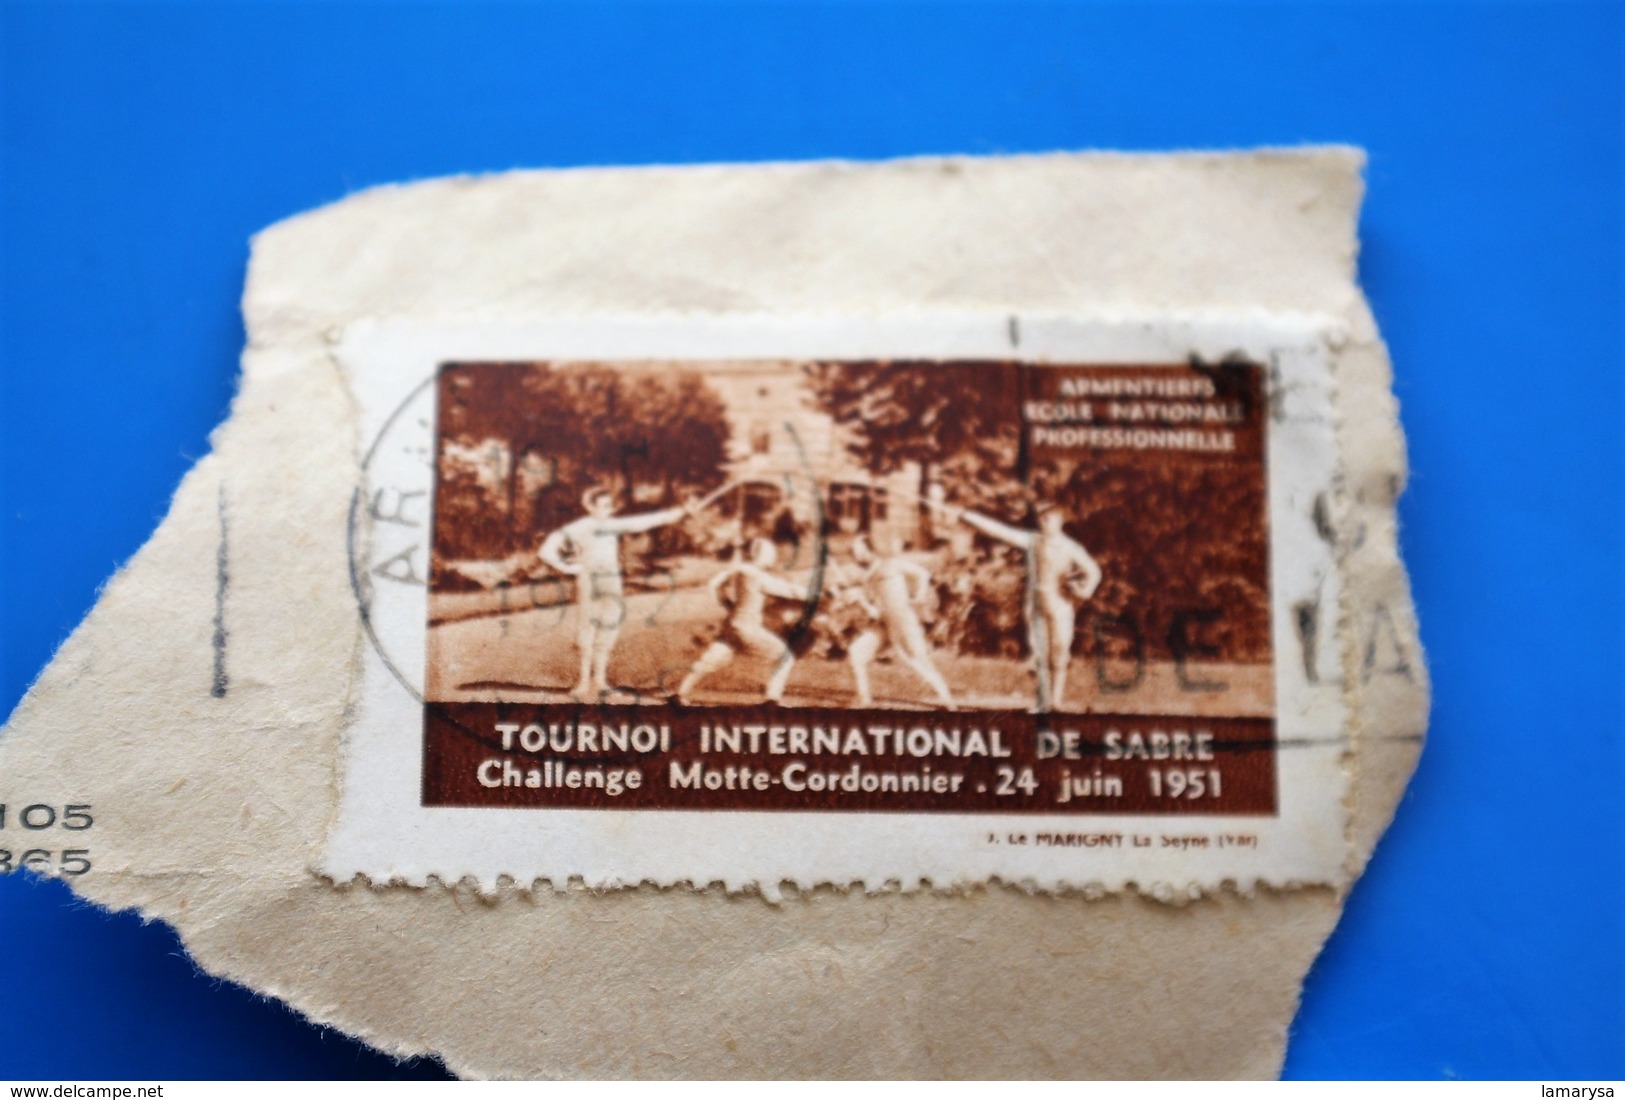 ARMENTIÈRES 1951 TOURNOI INTERNATIONAL DE SABRE CHALLE MAÎTRE CORDONNIER Vignette-Erinnophilie,Timbre,stamp,Bollo-Viñeta - Sports